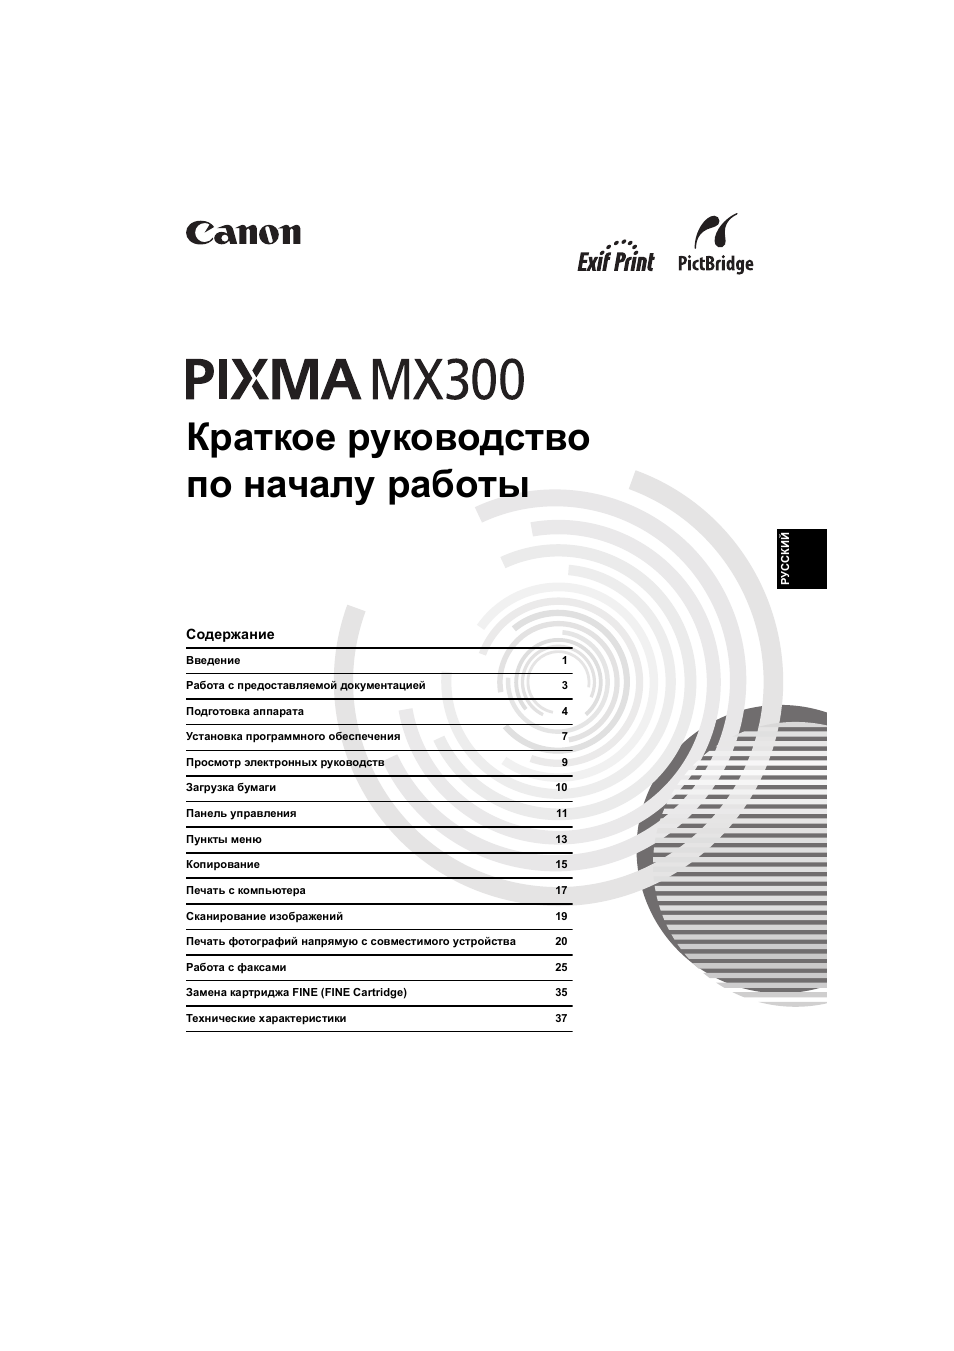 pixam mx 300